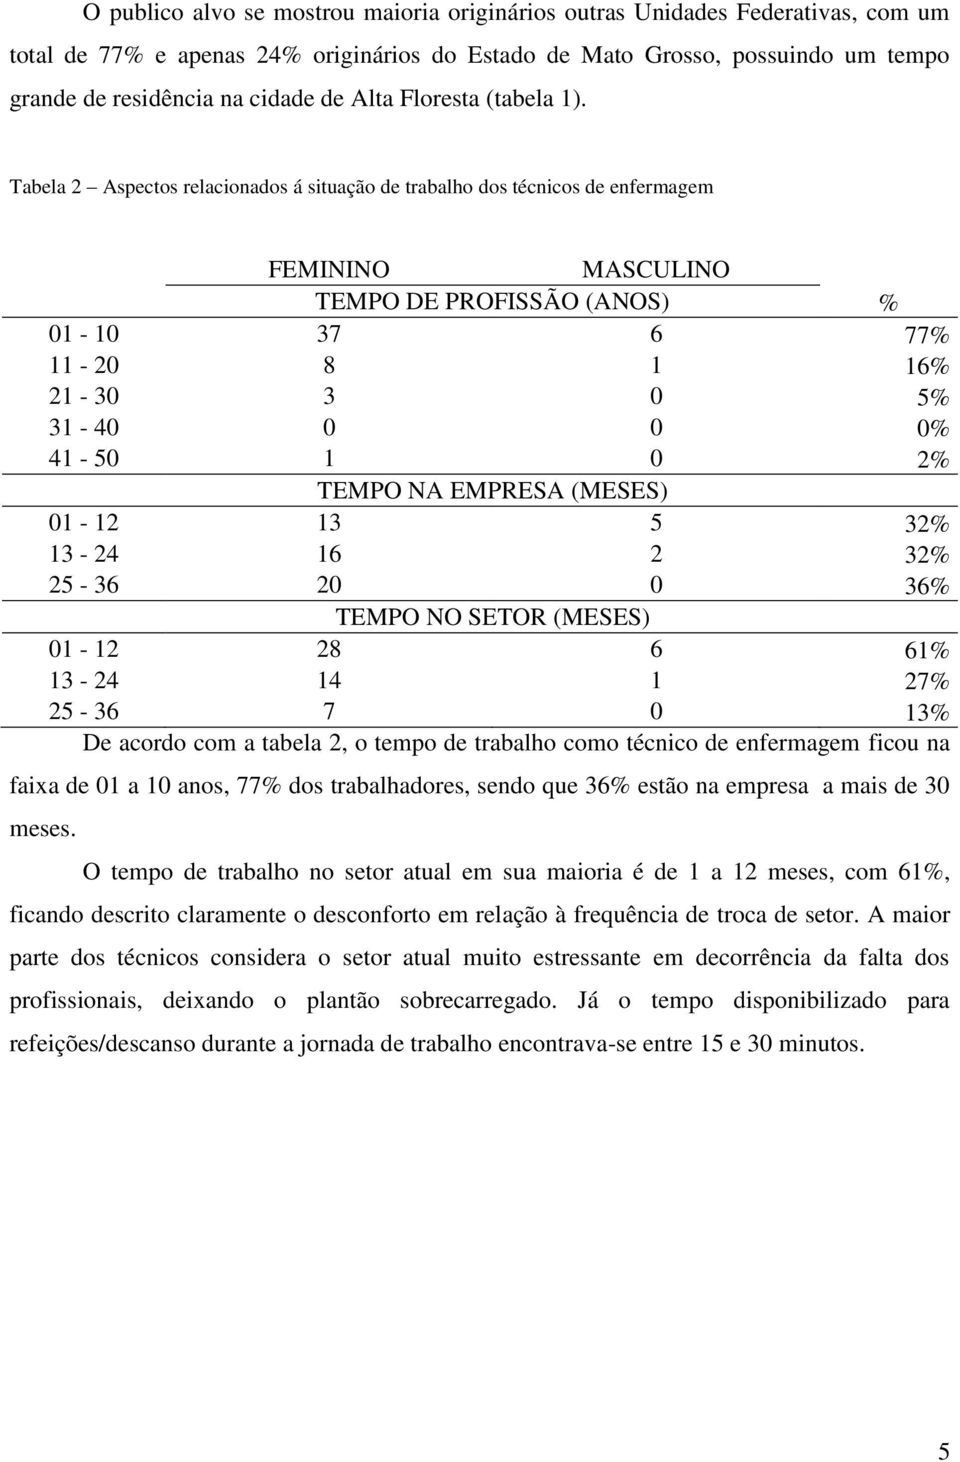 Tabela 2 Aspectos relacionados á situação de trabalho dos técnicos de enfermagem FEMININO MASCULINO TEMPO DE PROFISSÃO (ANOS) % 01-10 37 6 77% 11-20 8 1 16% 21-30 3 0 5% 31-40 0 0 0% 41-50 1 0 2%